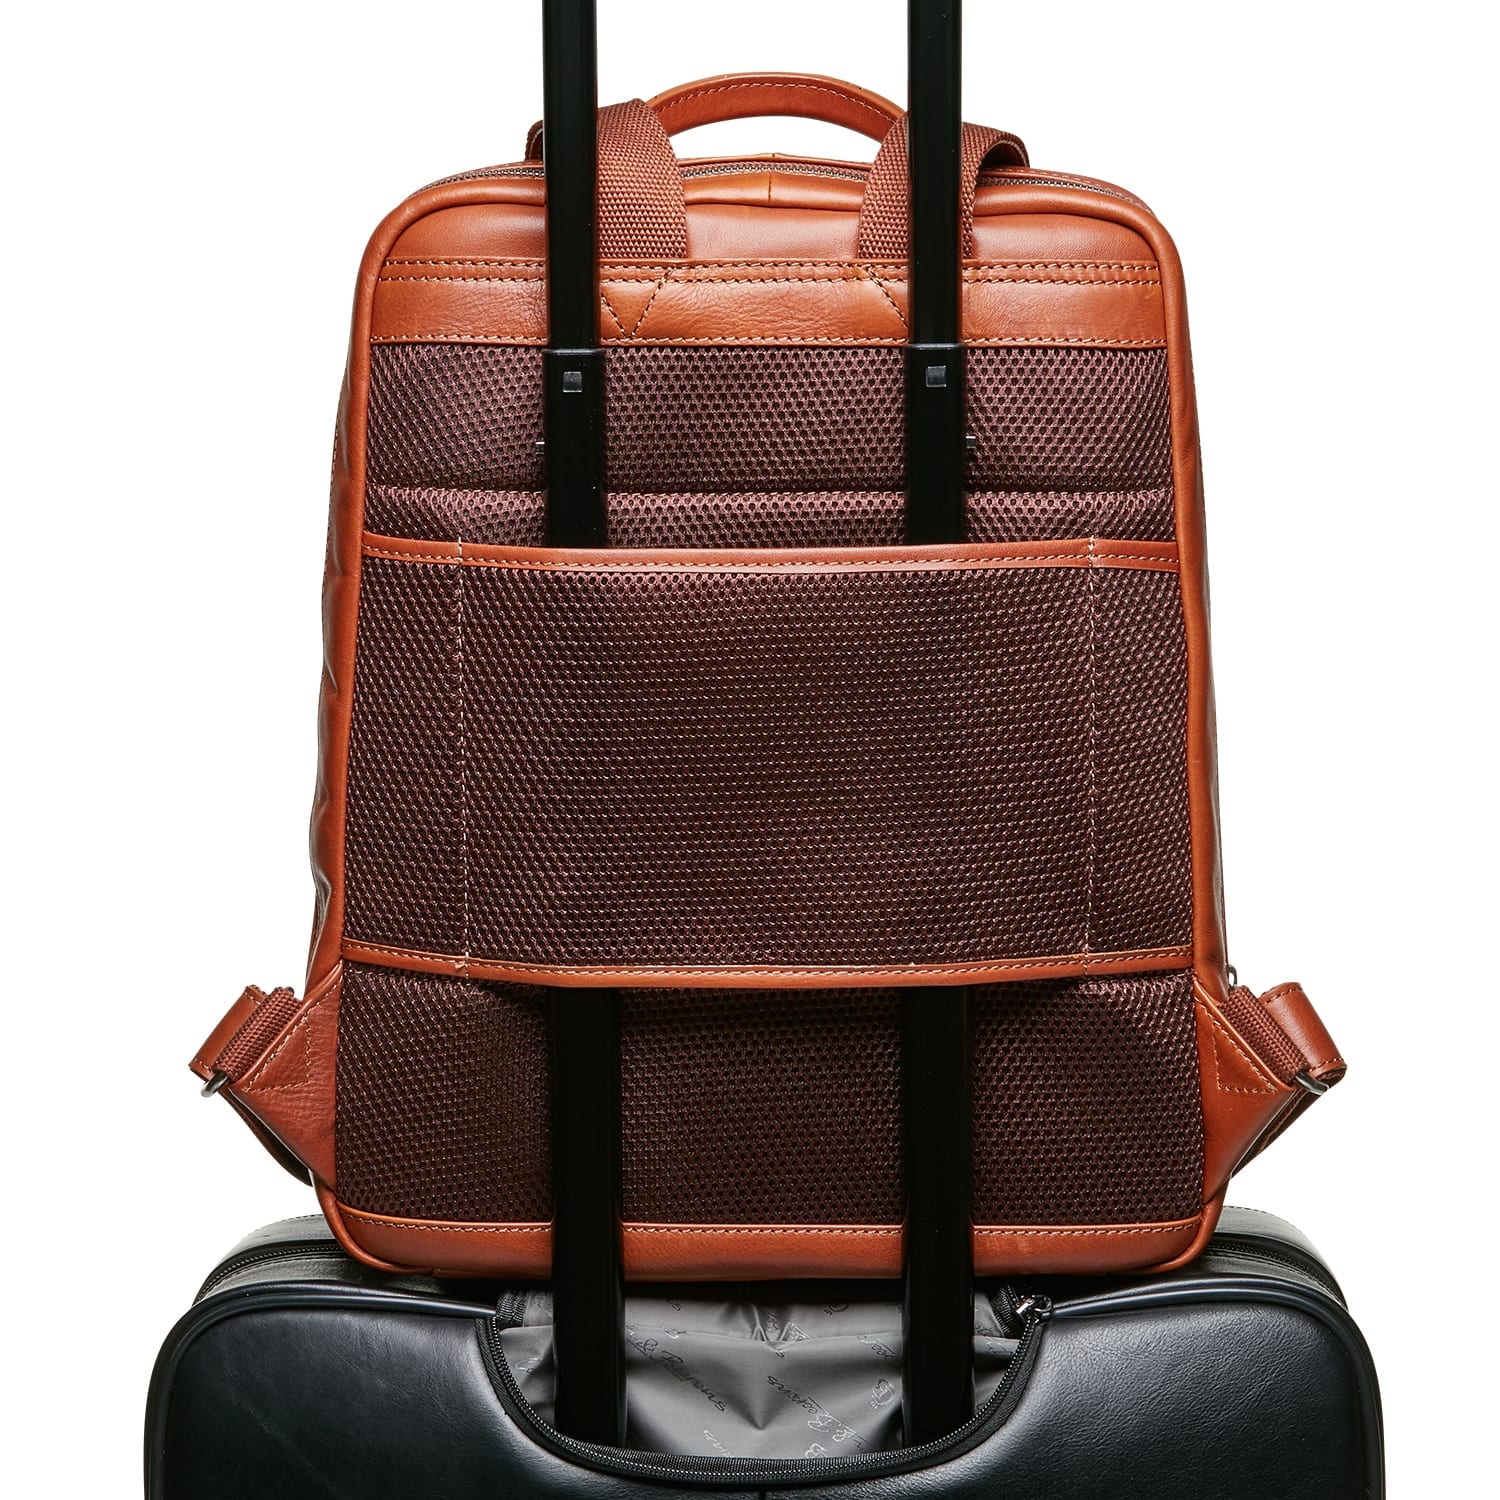 Walging Meer dan wat dan ook Pessimist Castelijn & Beerens Firenze Laptop Backpack 15,6" Light Brown | Goodwalt  Bags & Cases